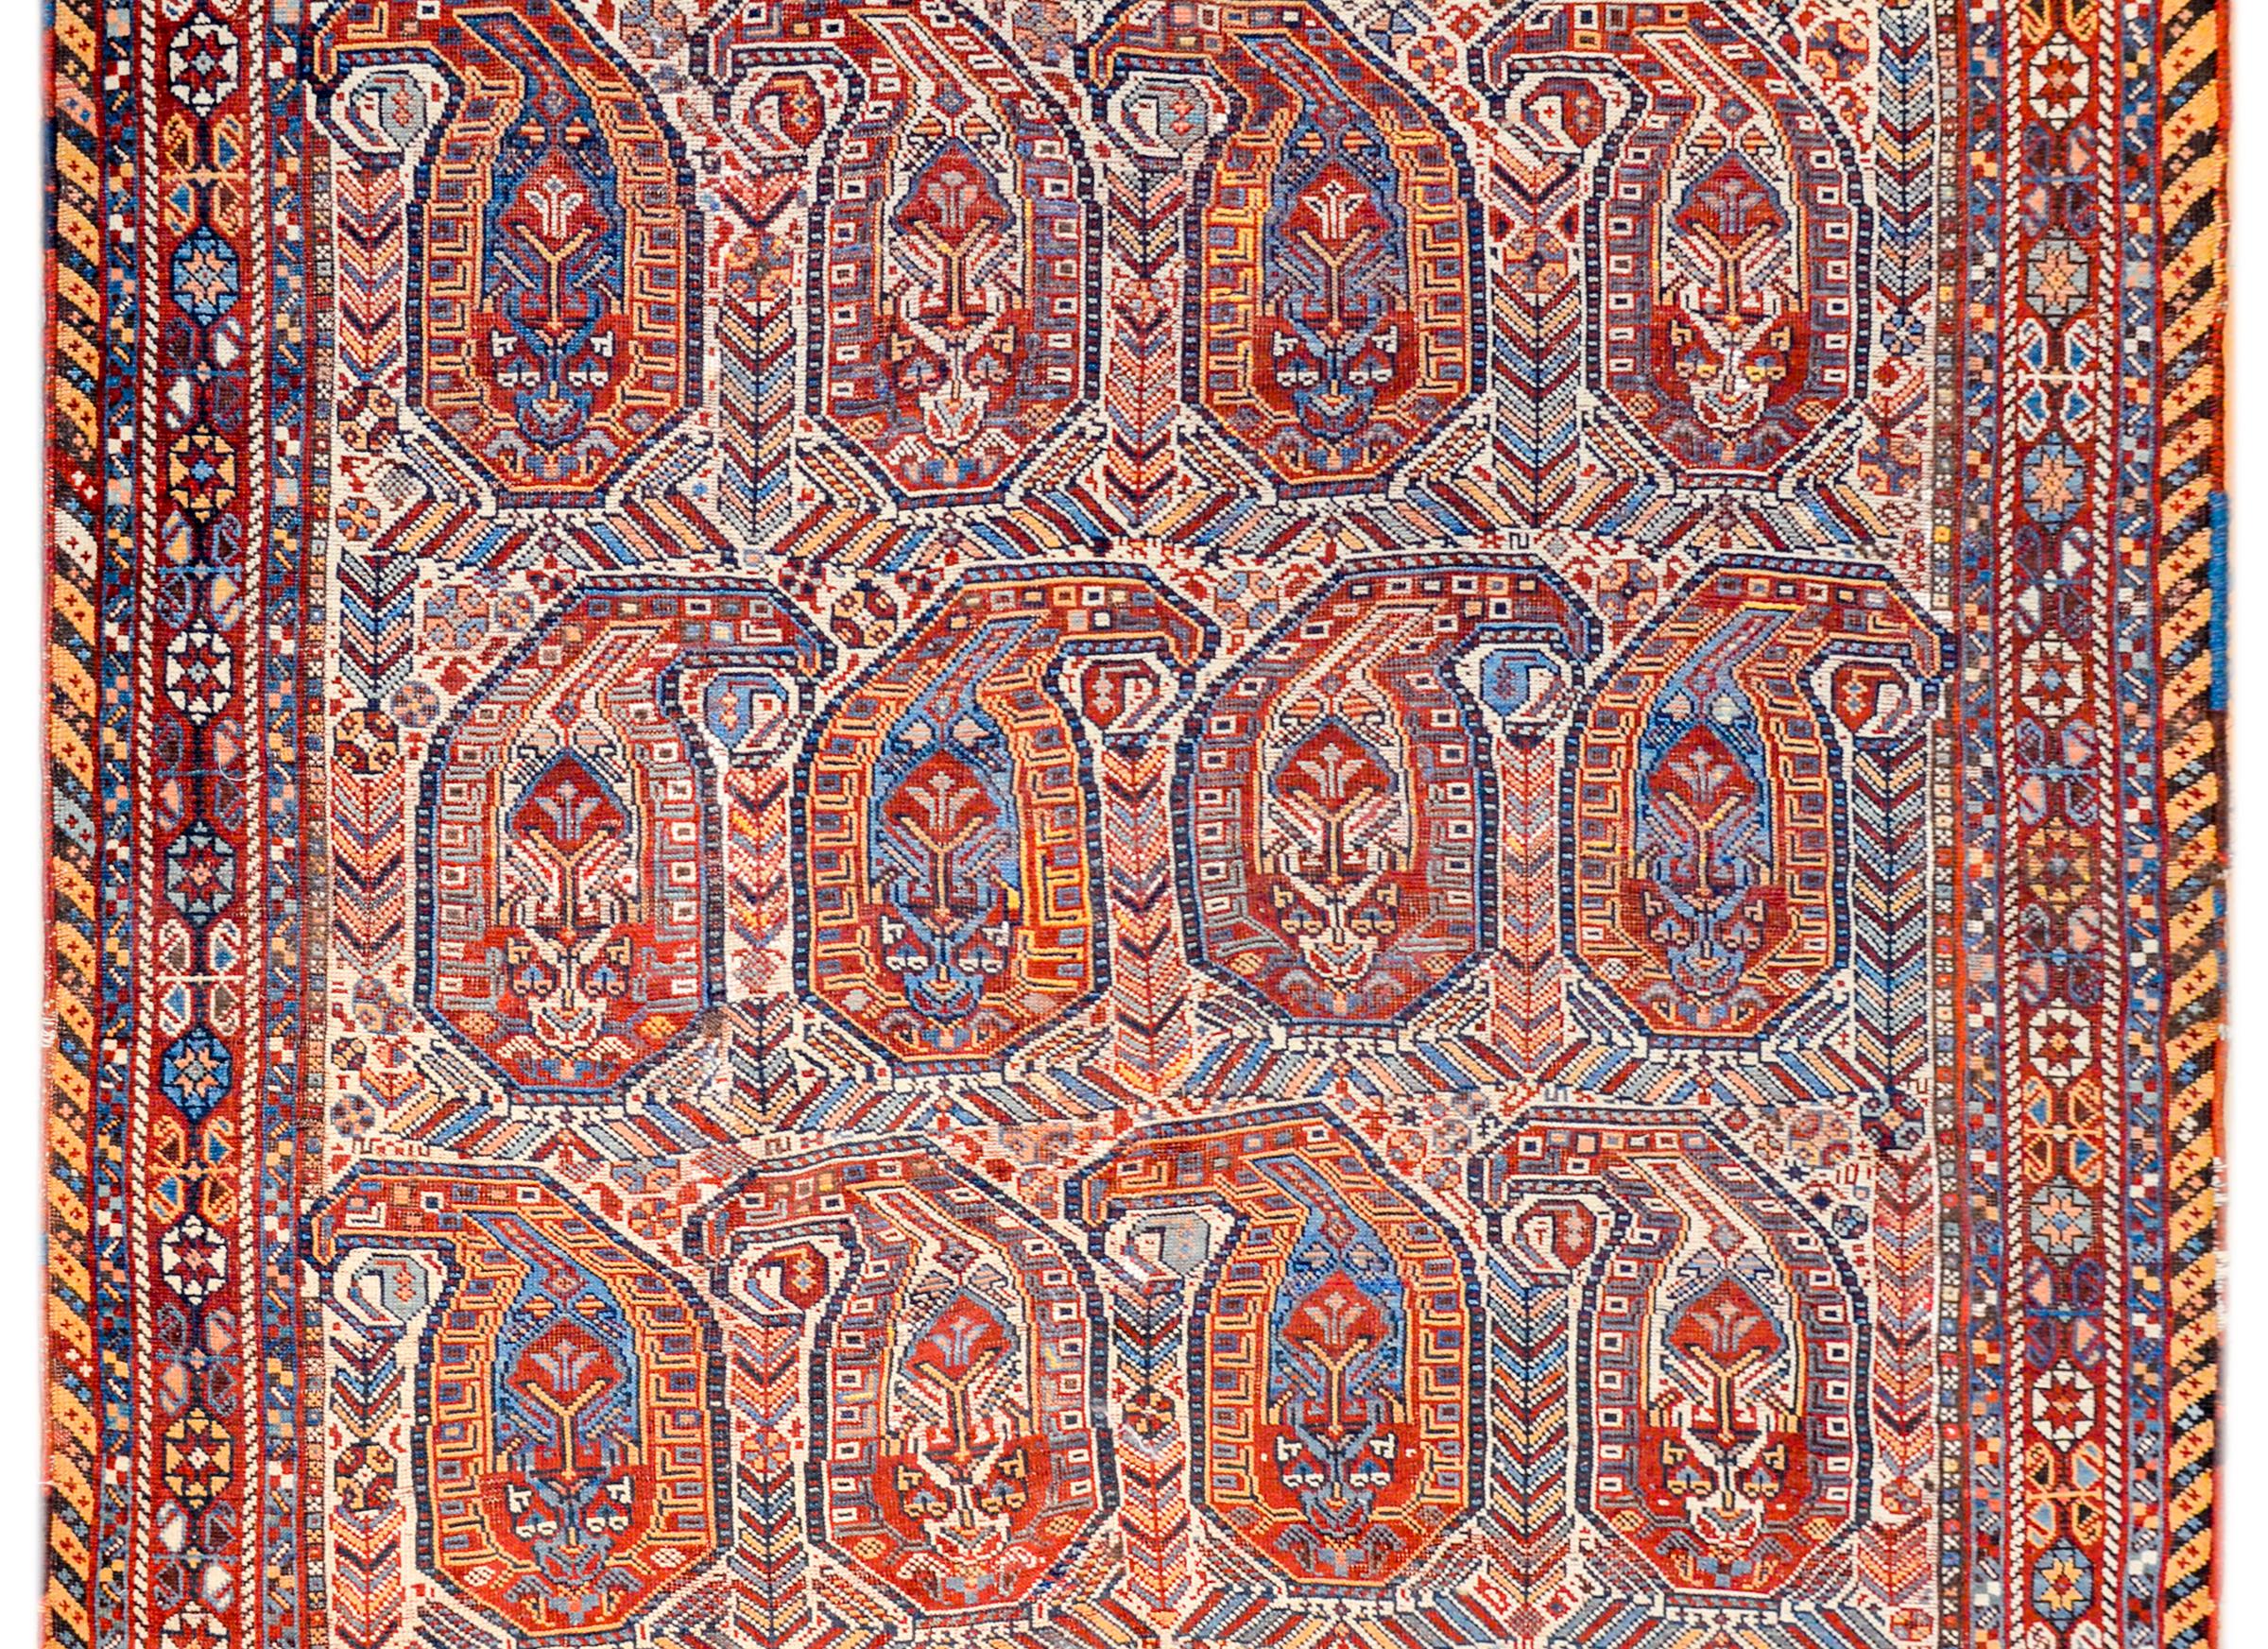 Un incroyable tapis persan Gashgaei du début du 20e siècle avec un motif cachemire à grande échelle tissé en laine teintée végétale de couleur cramoisie, or, indigo, corail, noir et blanc. La bordure est exceptionnelle, avec un motif tissé serré